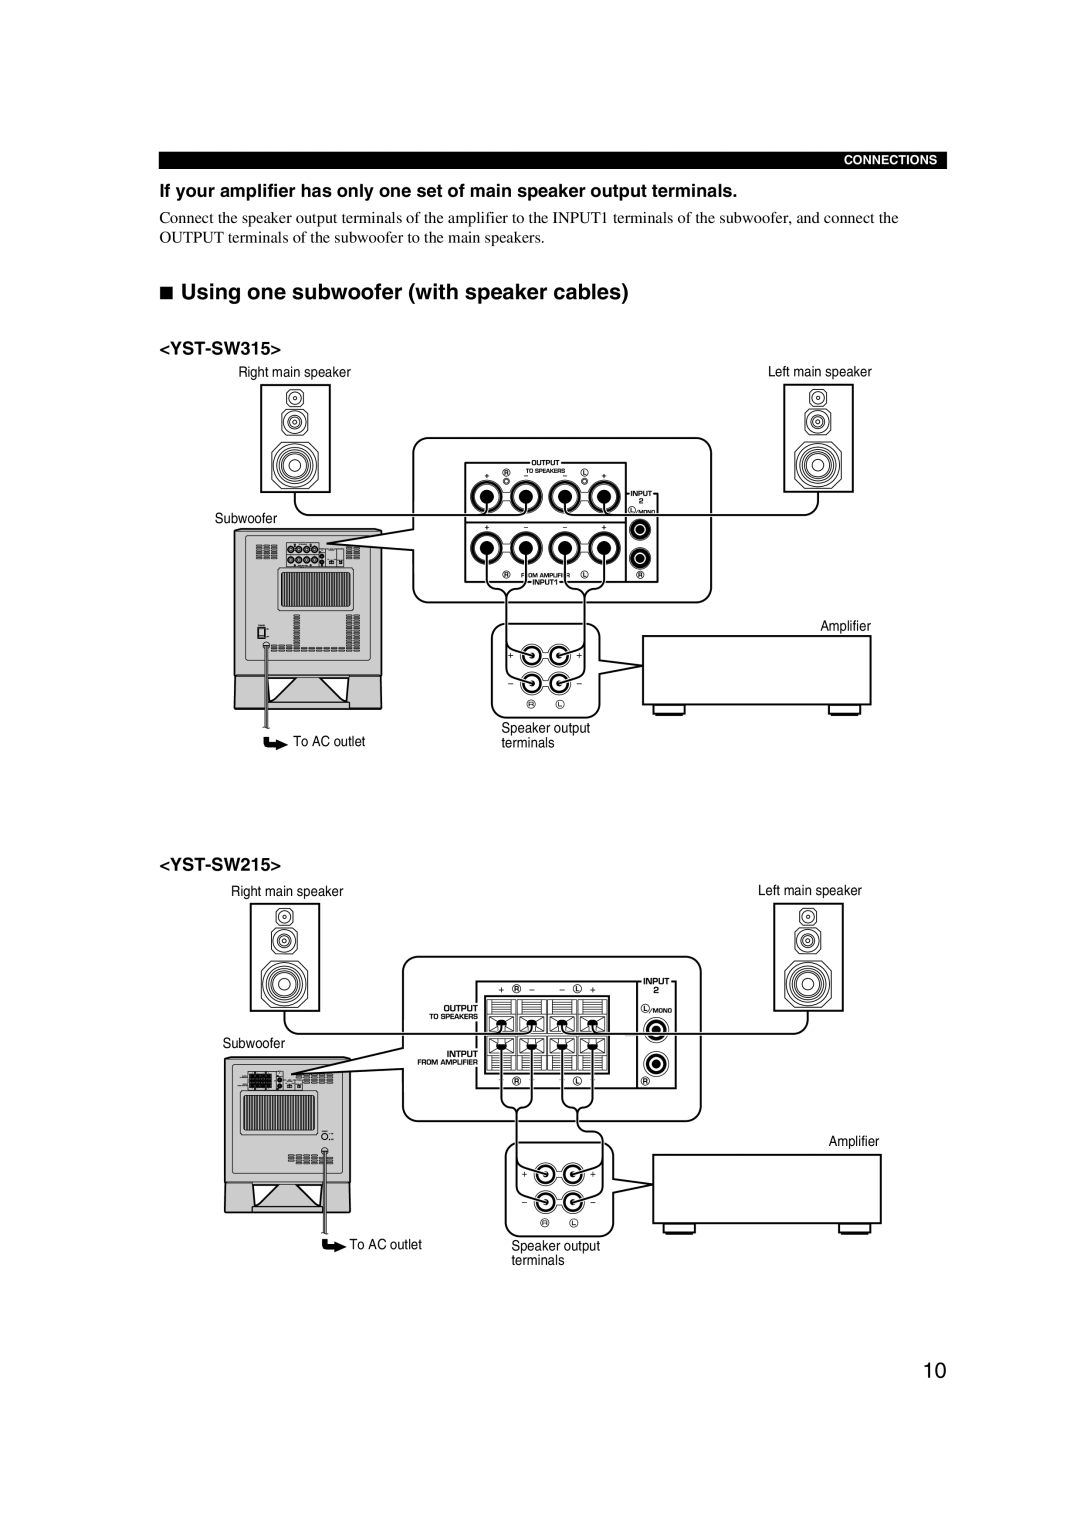 Yamaha HTR-5940 AV owner manual <YST-SW315>, <YST-SW215>, Connections, Left main speaker, Speaker output 